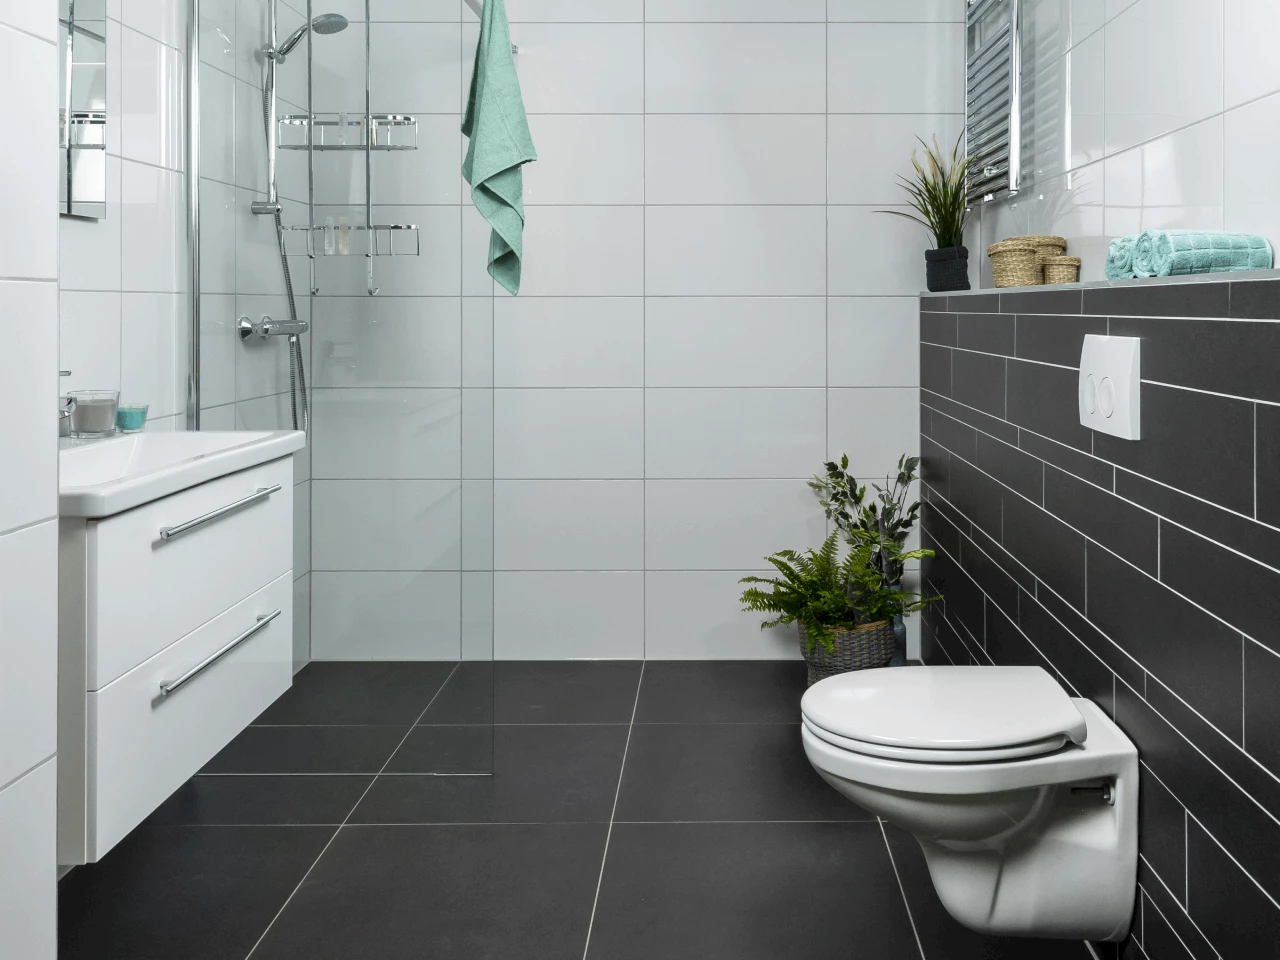 Overjas Fabel Lezen Een moderne badkamer voor een strakke uitstraling | Sani4All